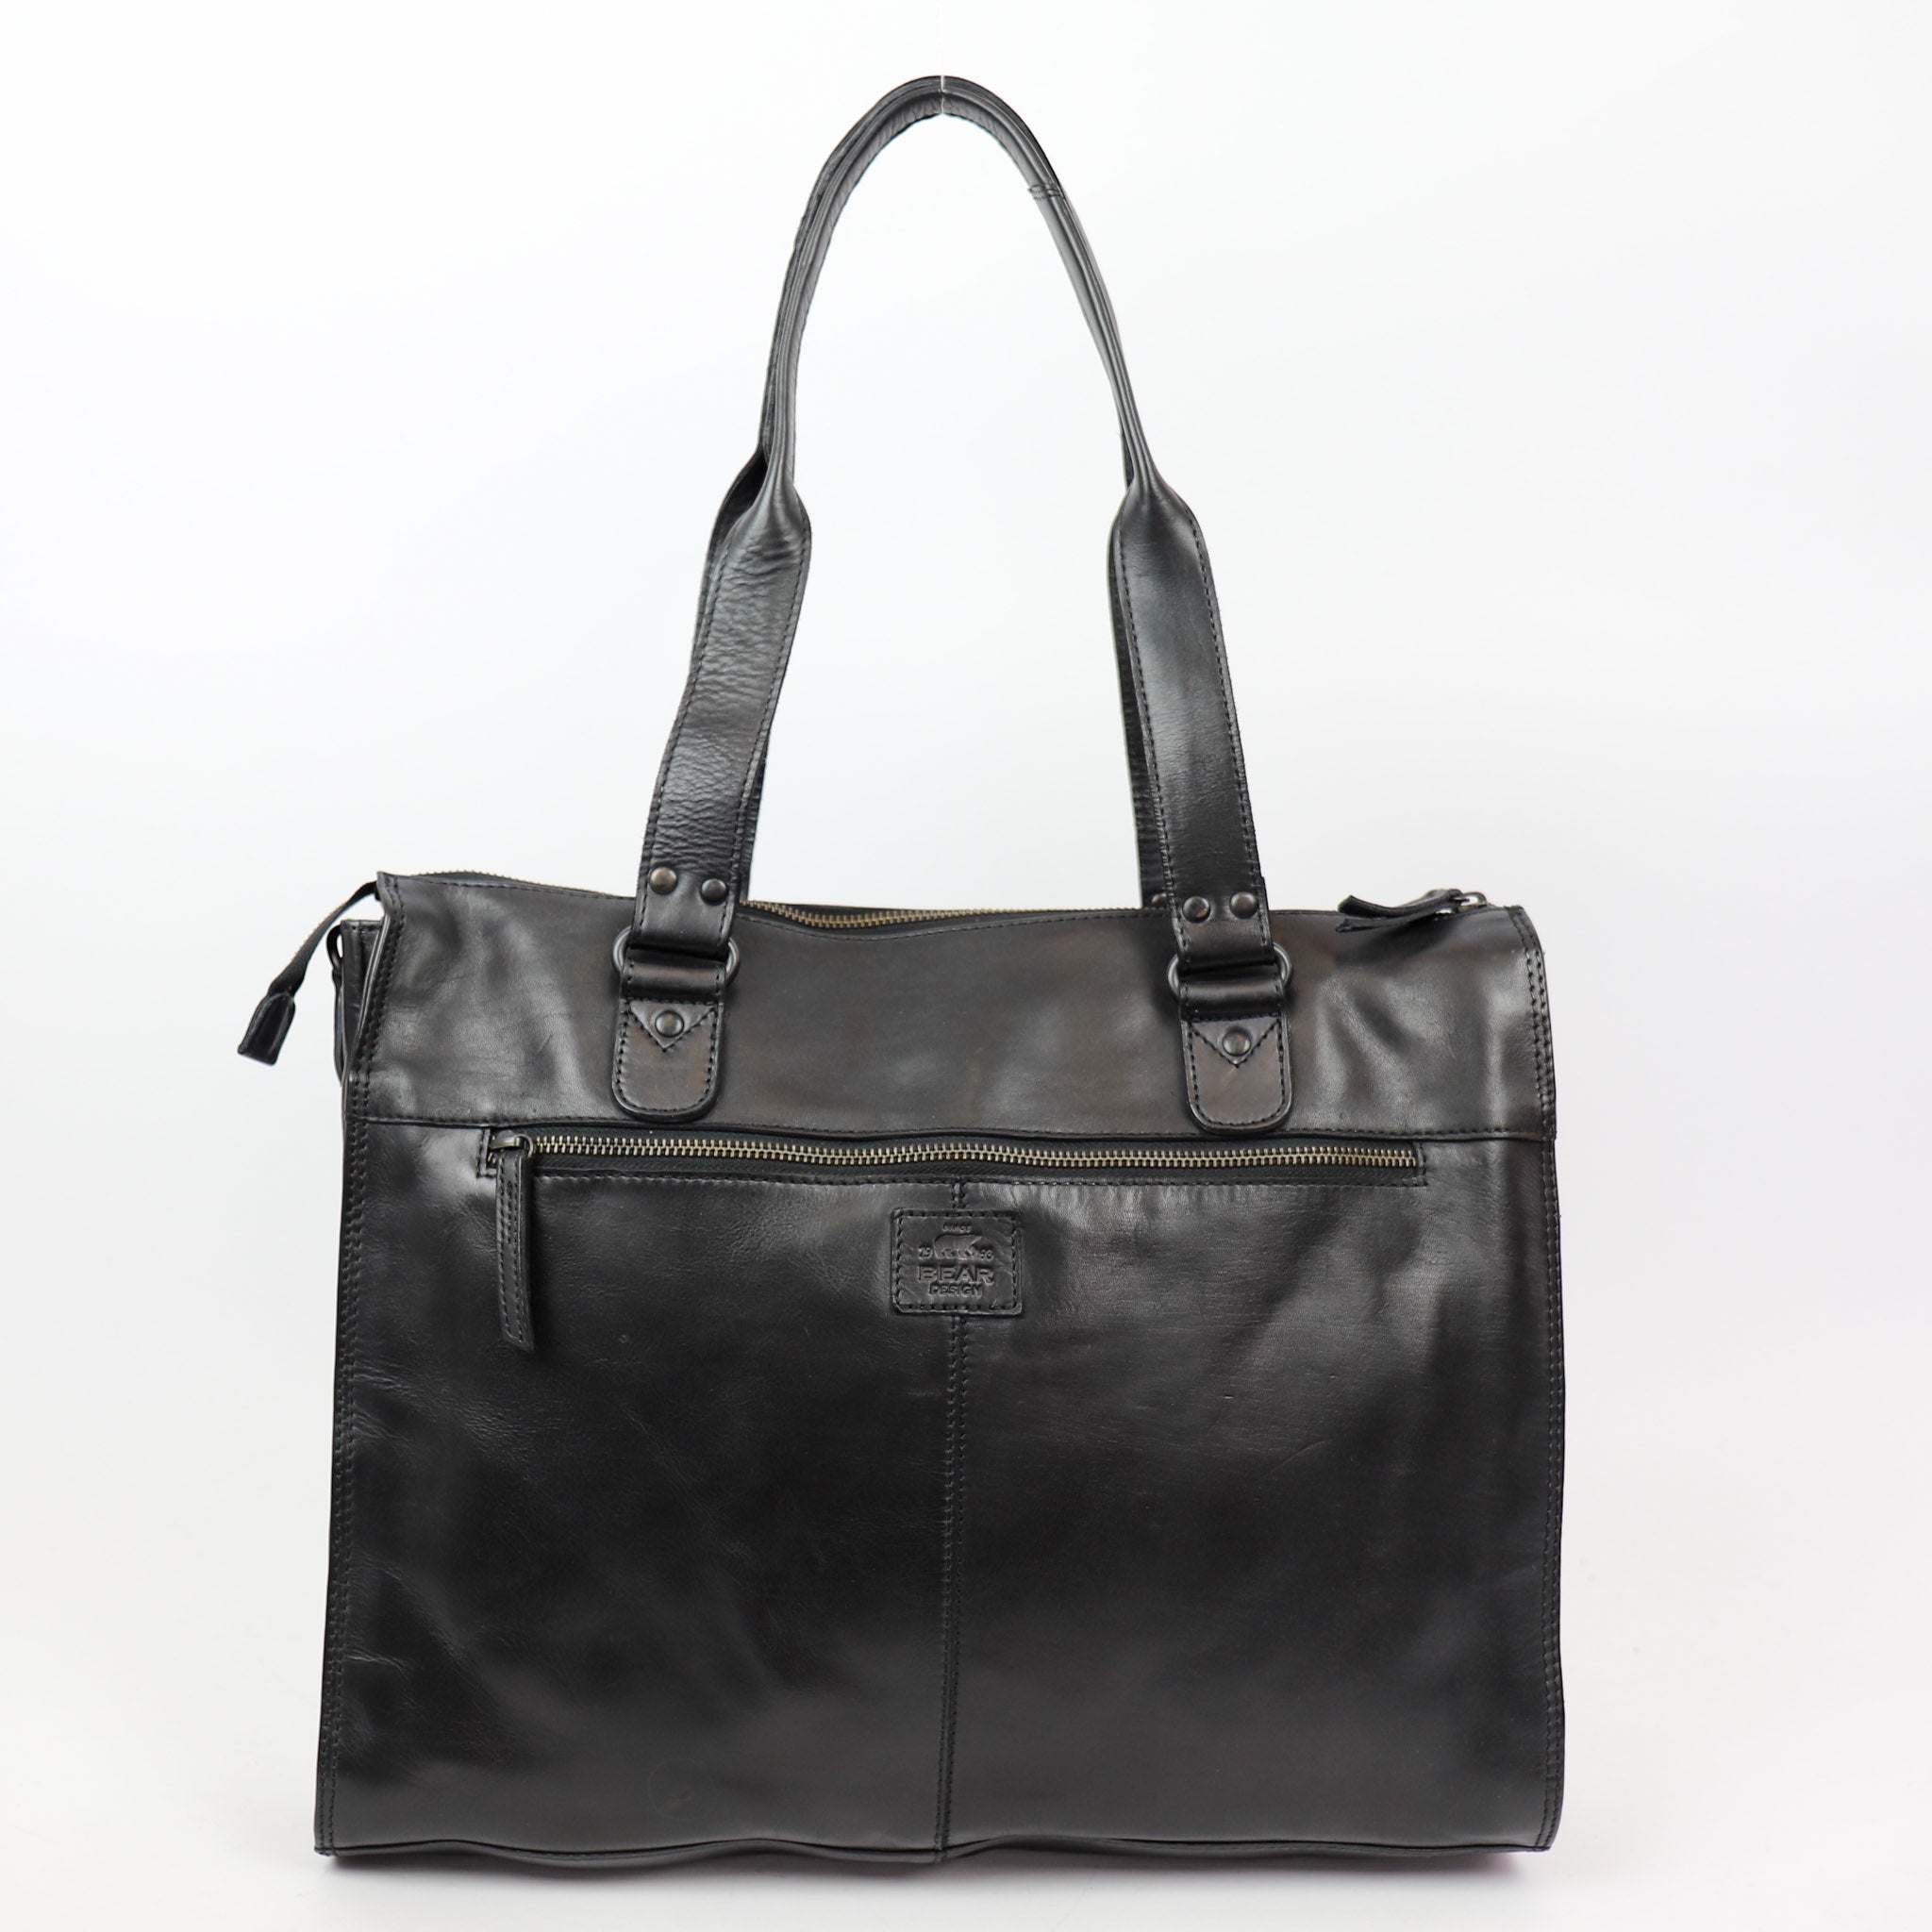 Hand/shoulder bag 'Mea' black - CL 35221